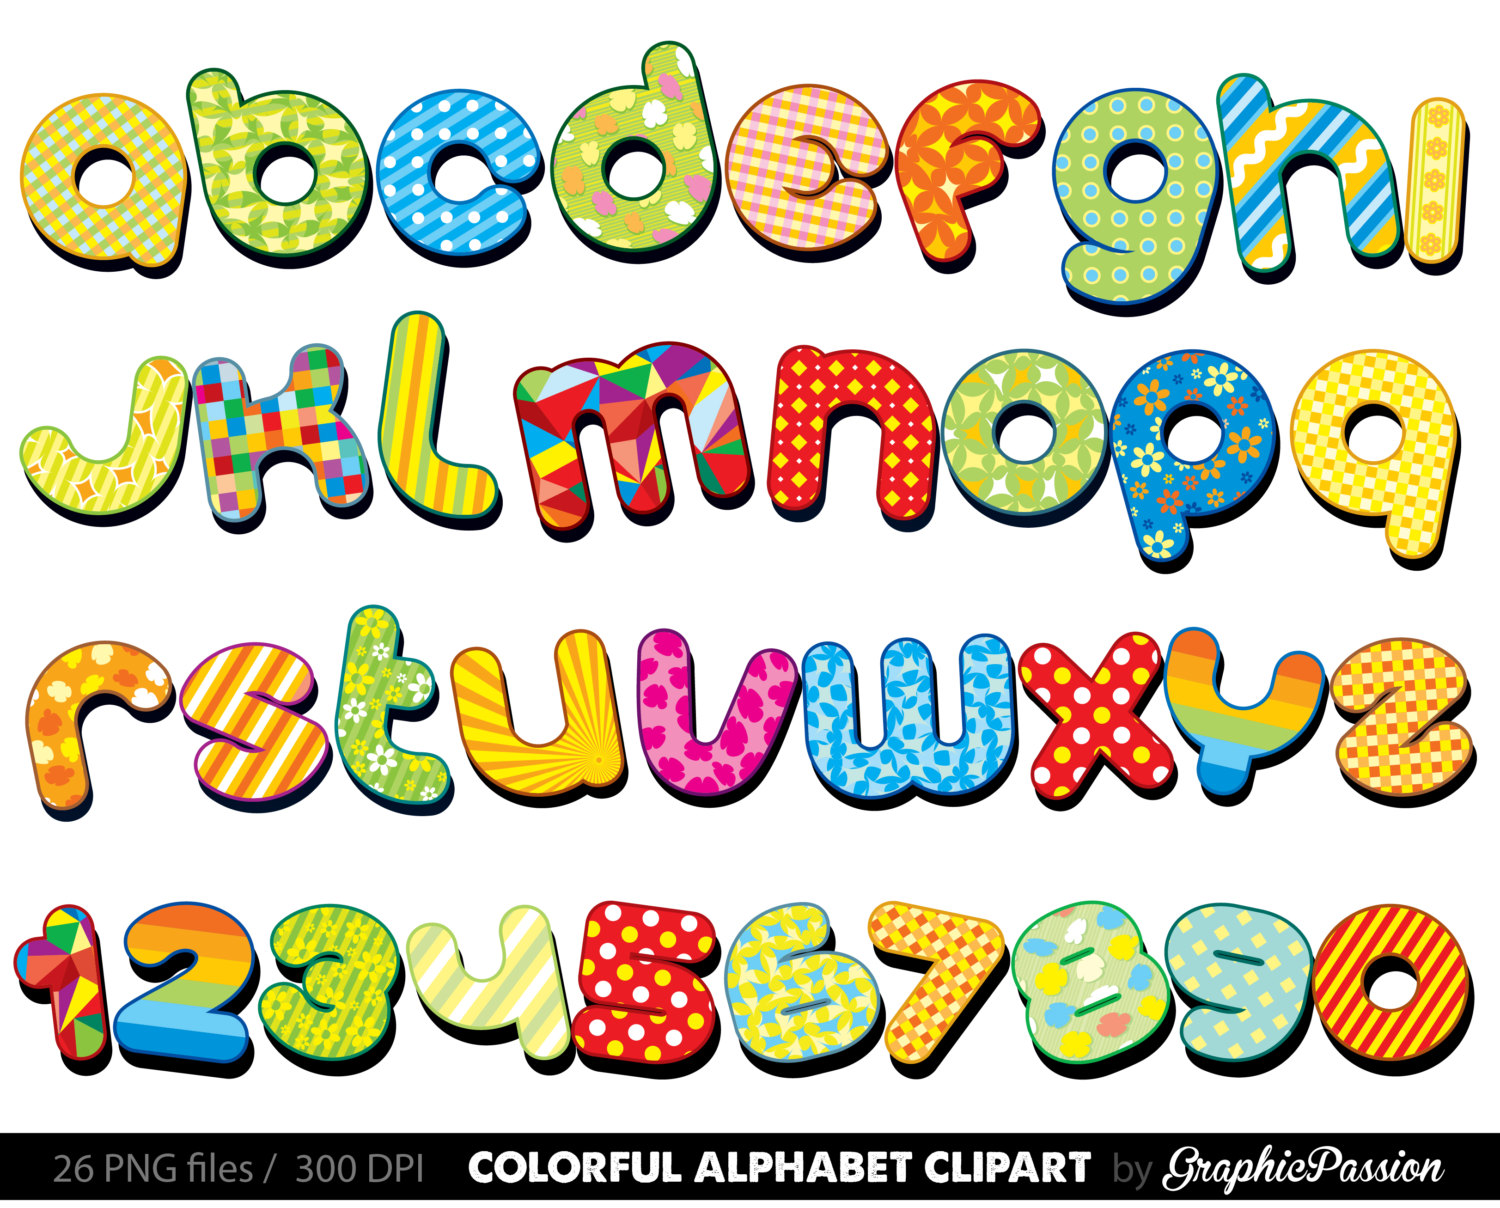 Colorful Alphabet clipart .